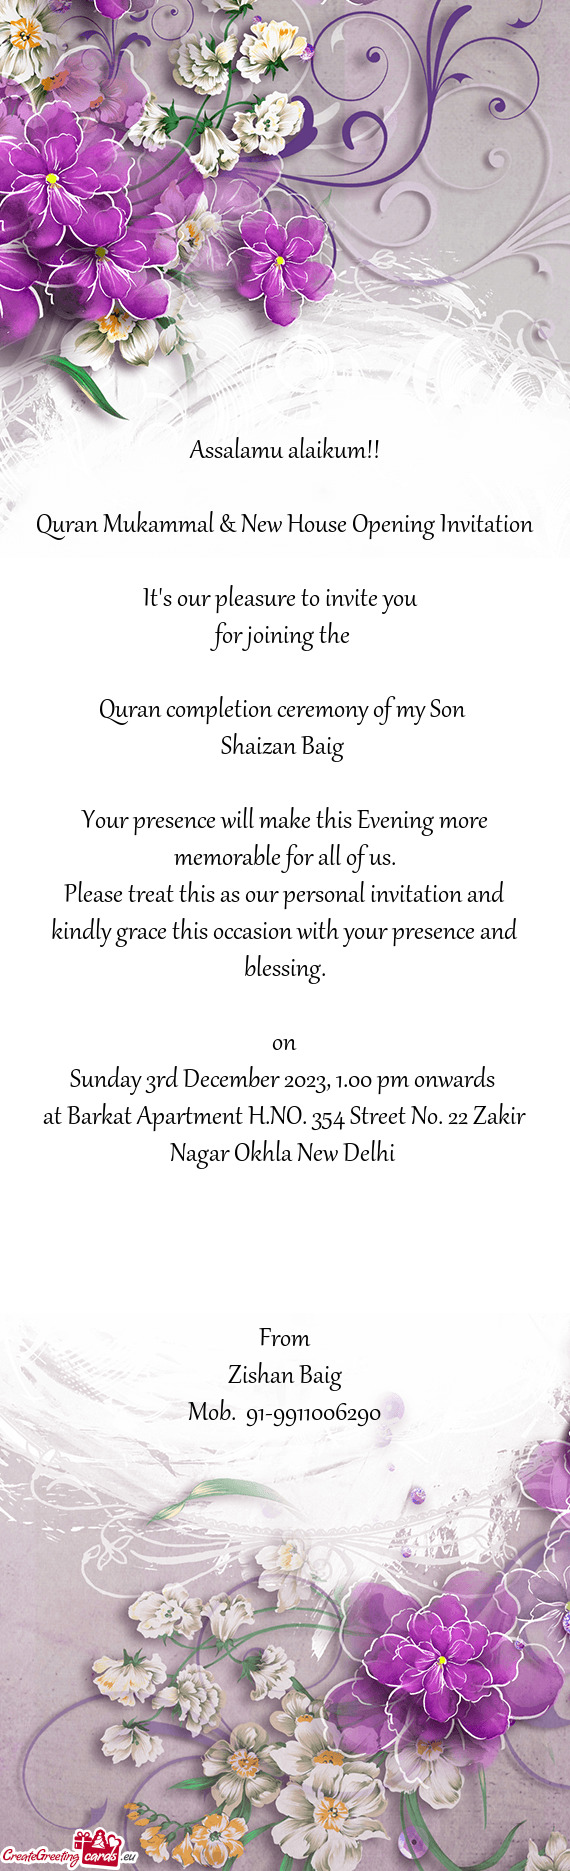 Quran Mukammal & New House Opening Invitation